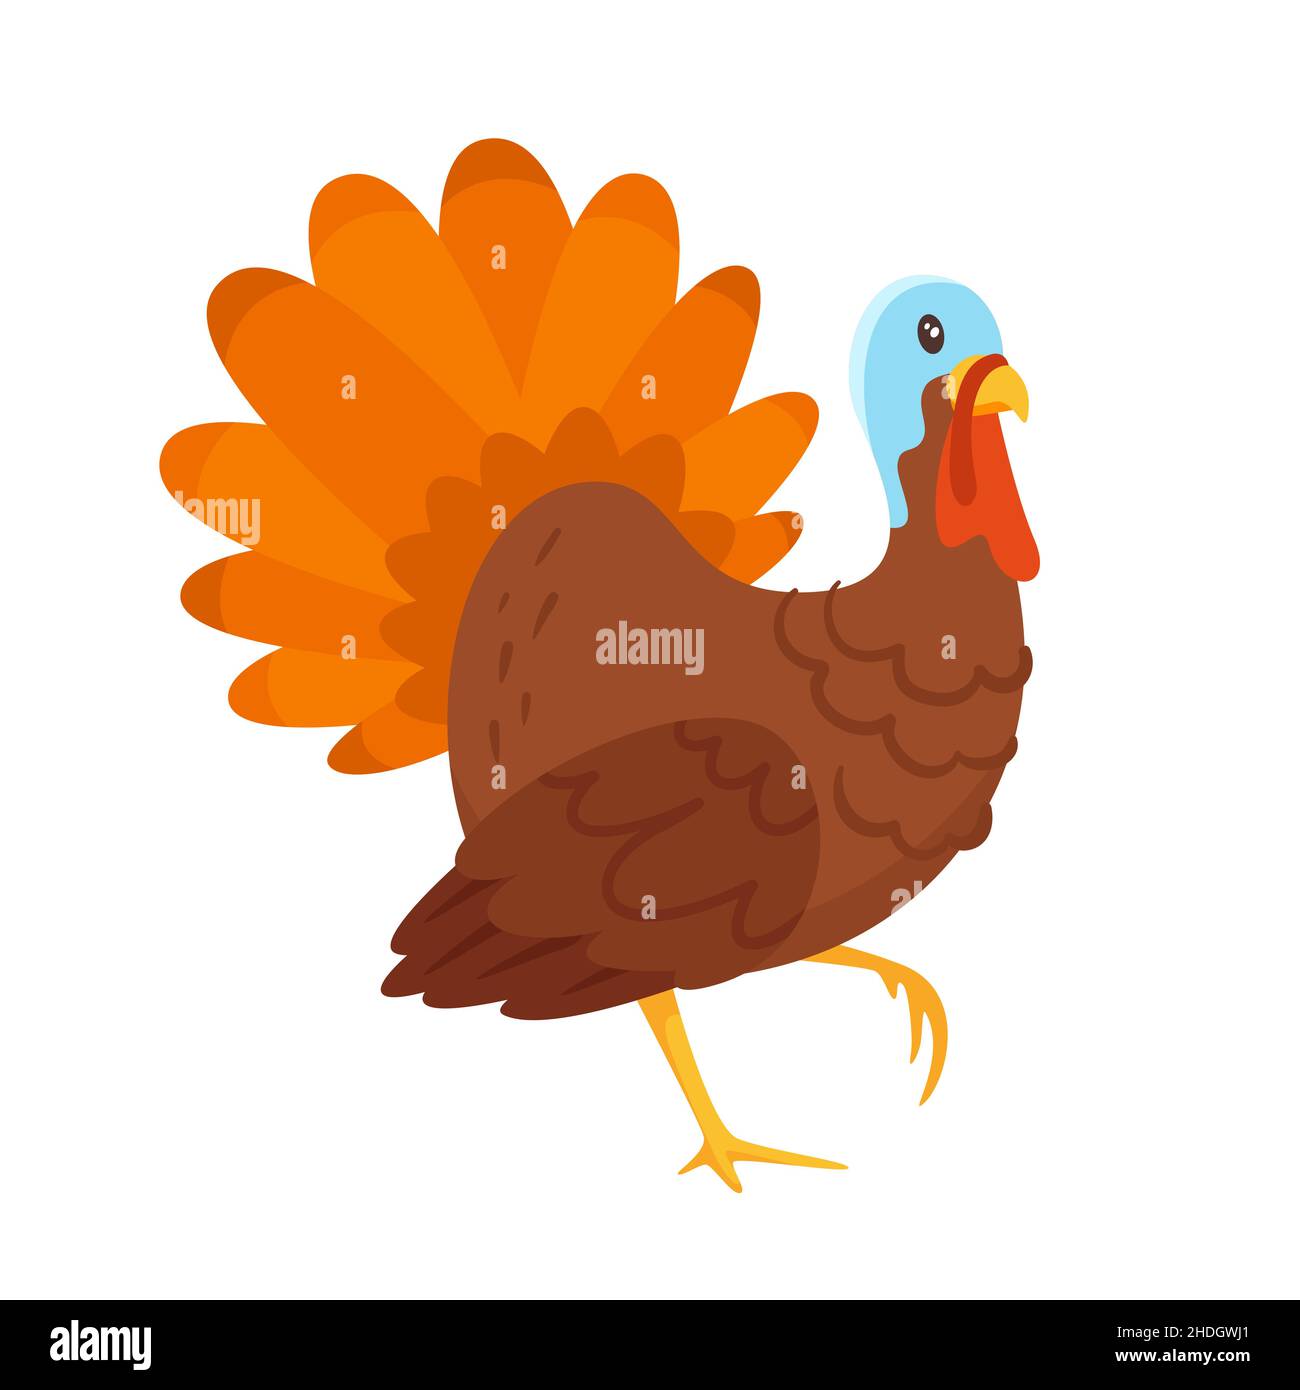 Vector cartoon style illustration of a turkey Stock Vector